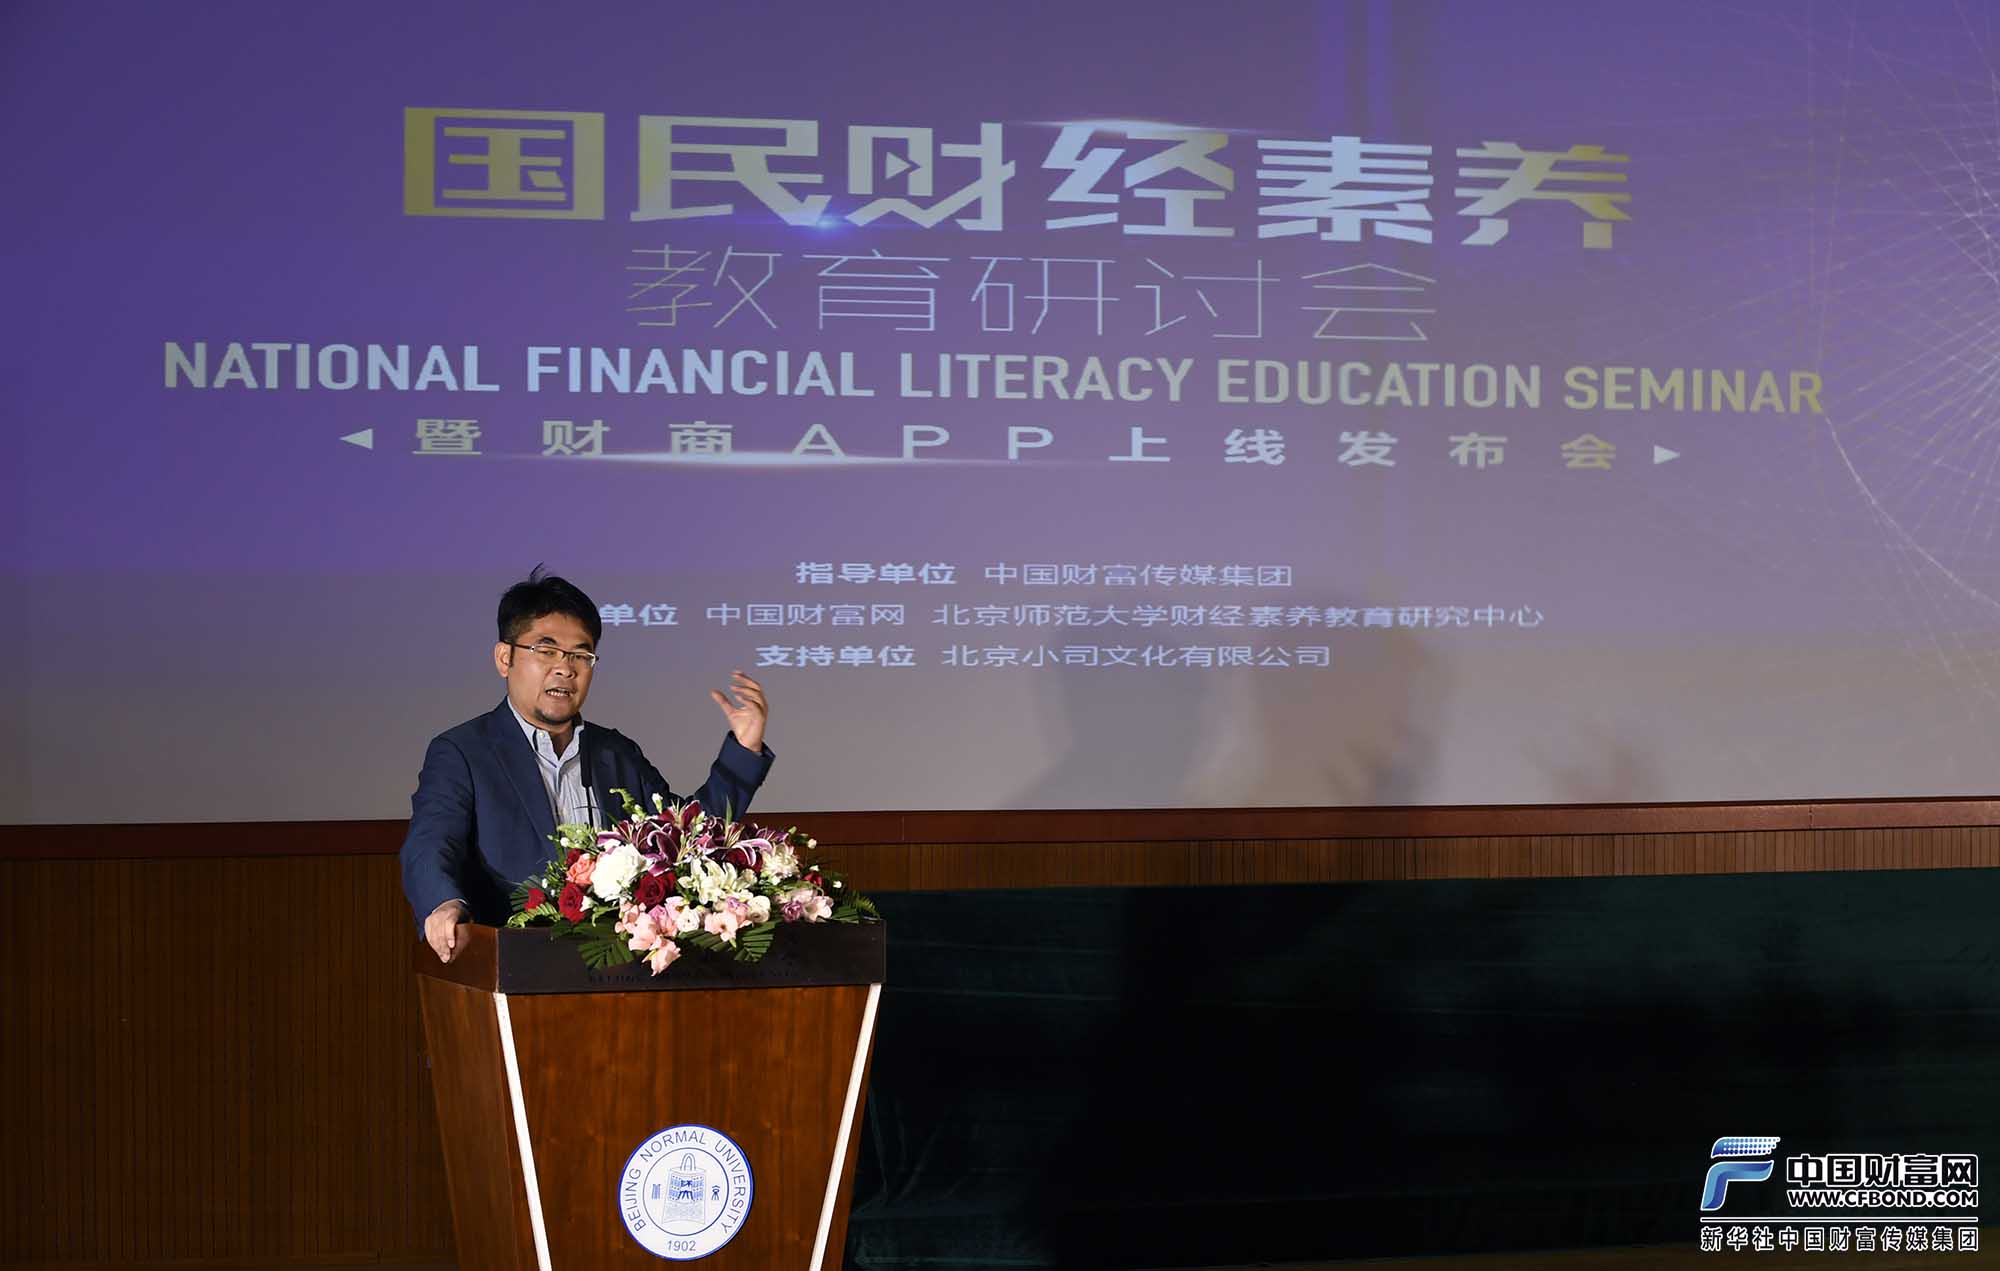 北京师范大学财经素养教育研究中心主任苏凇发表演讲